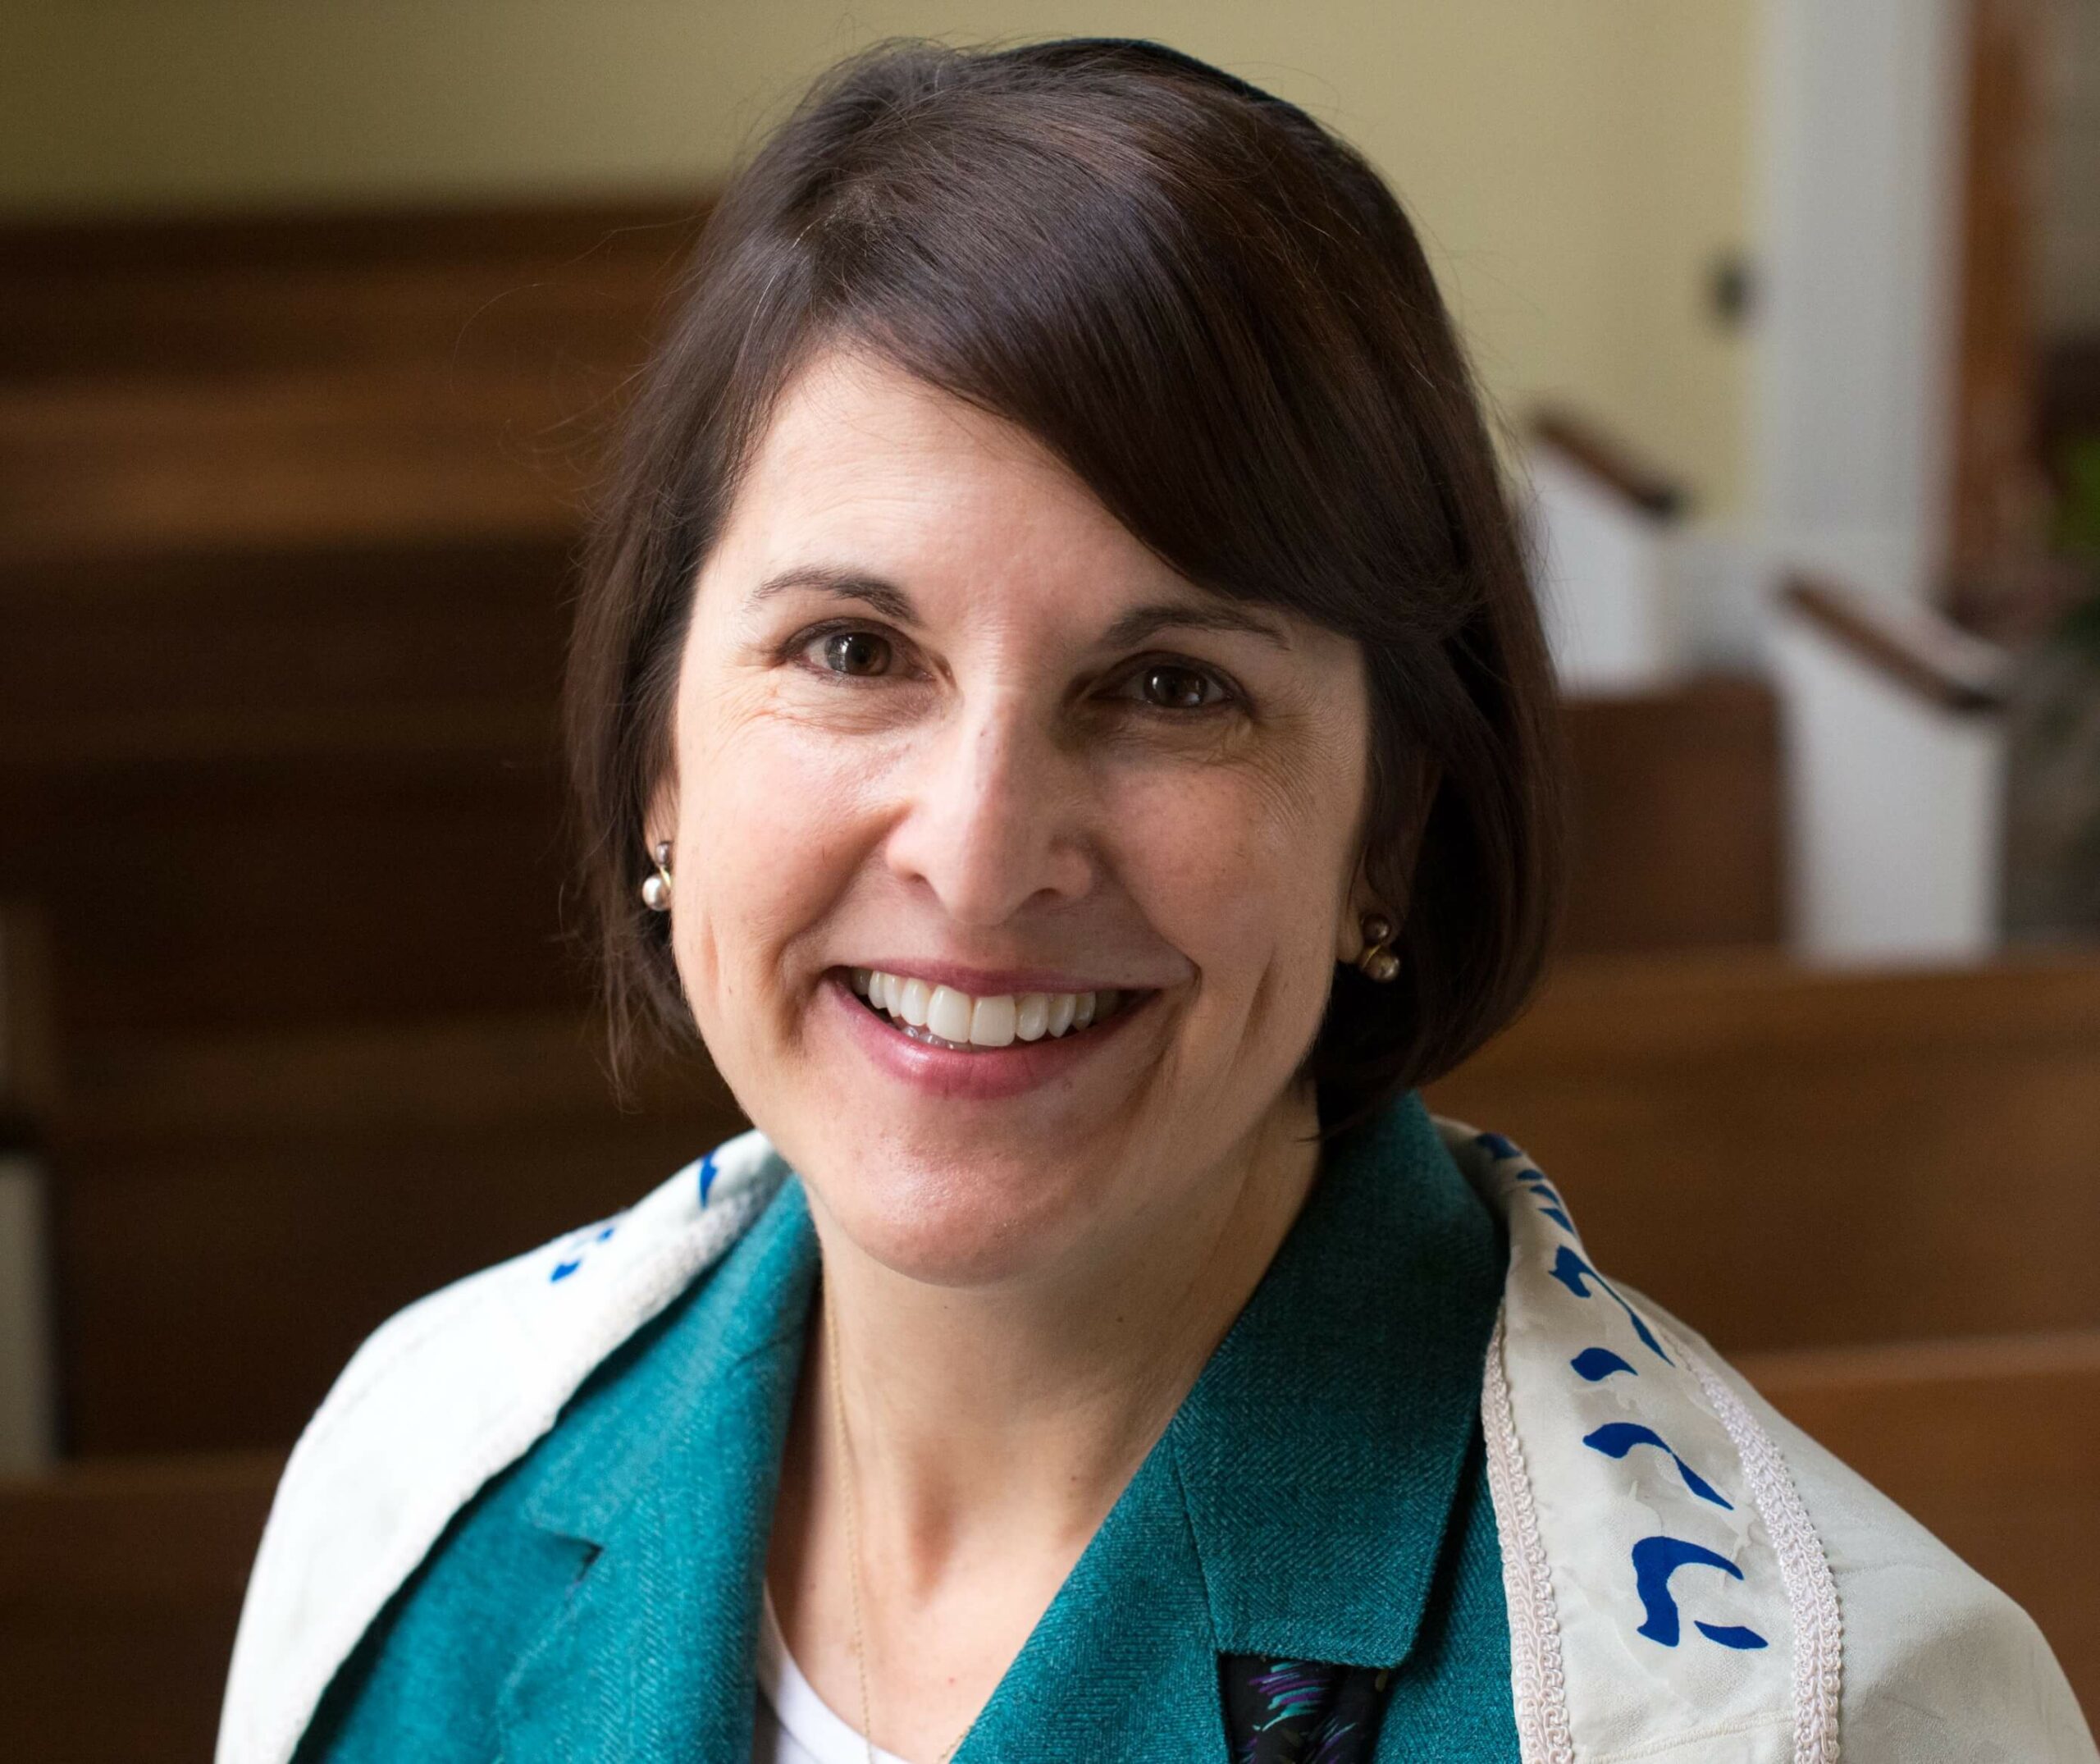 Rabbi Julie Danan